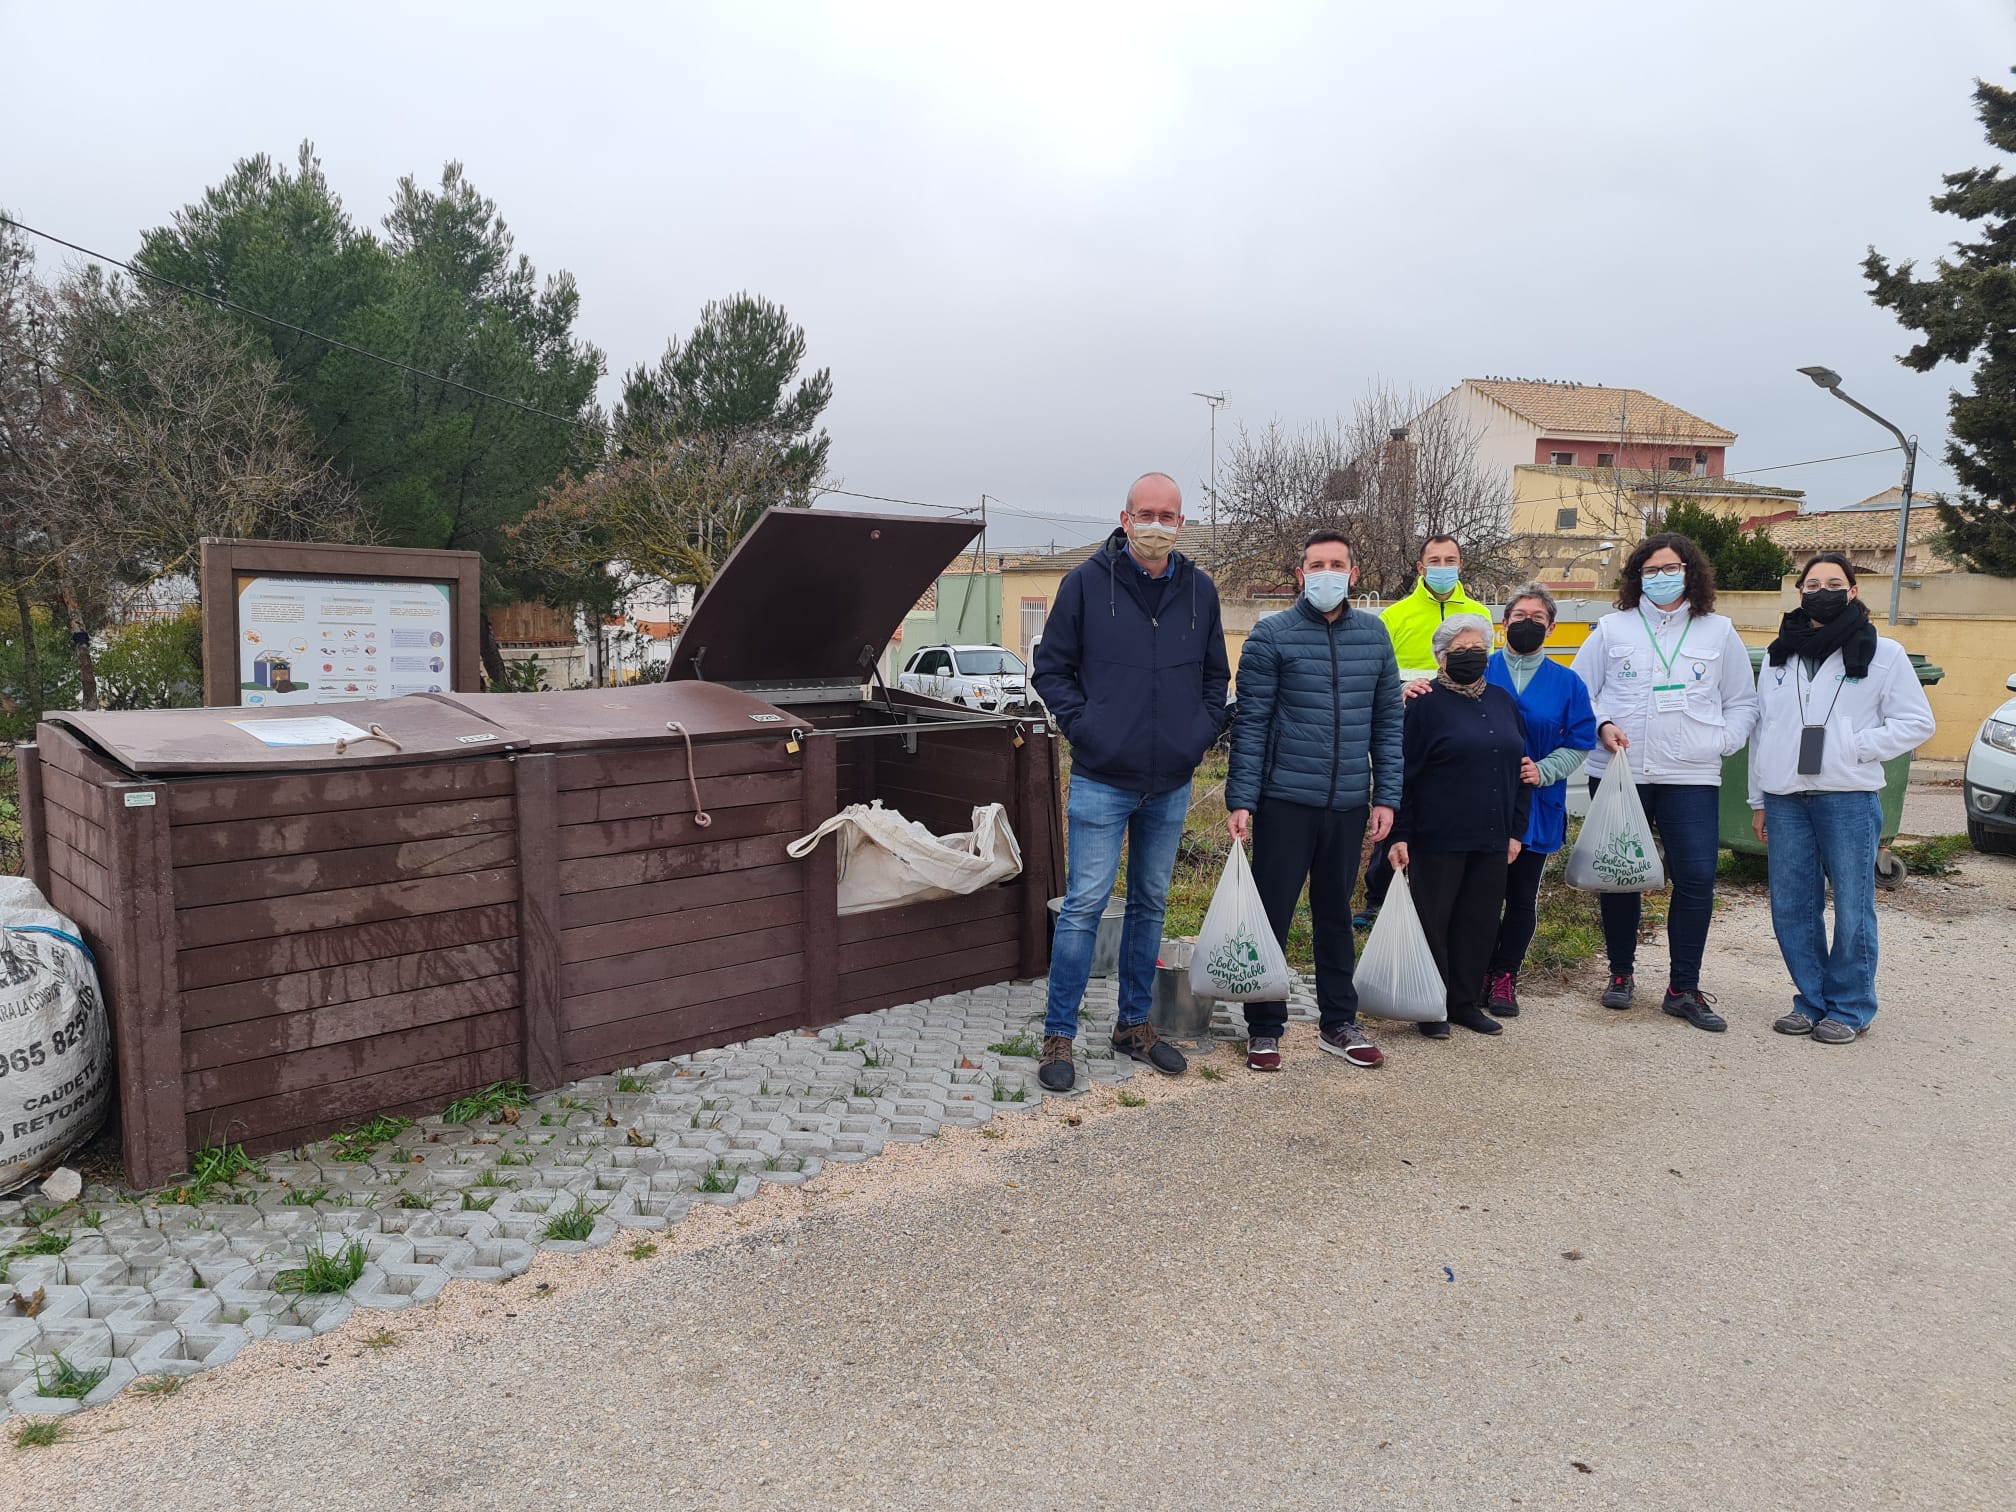 Reparten el compost obtenido en la isla de compostaje de La Encina